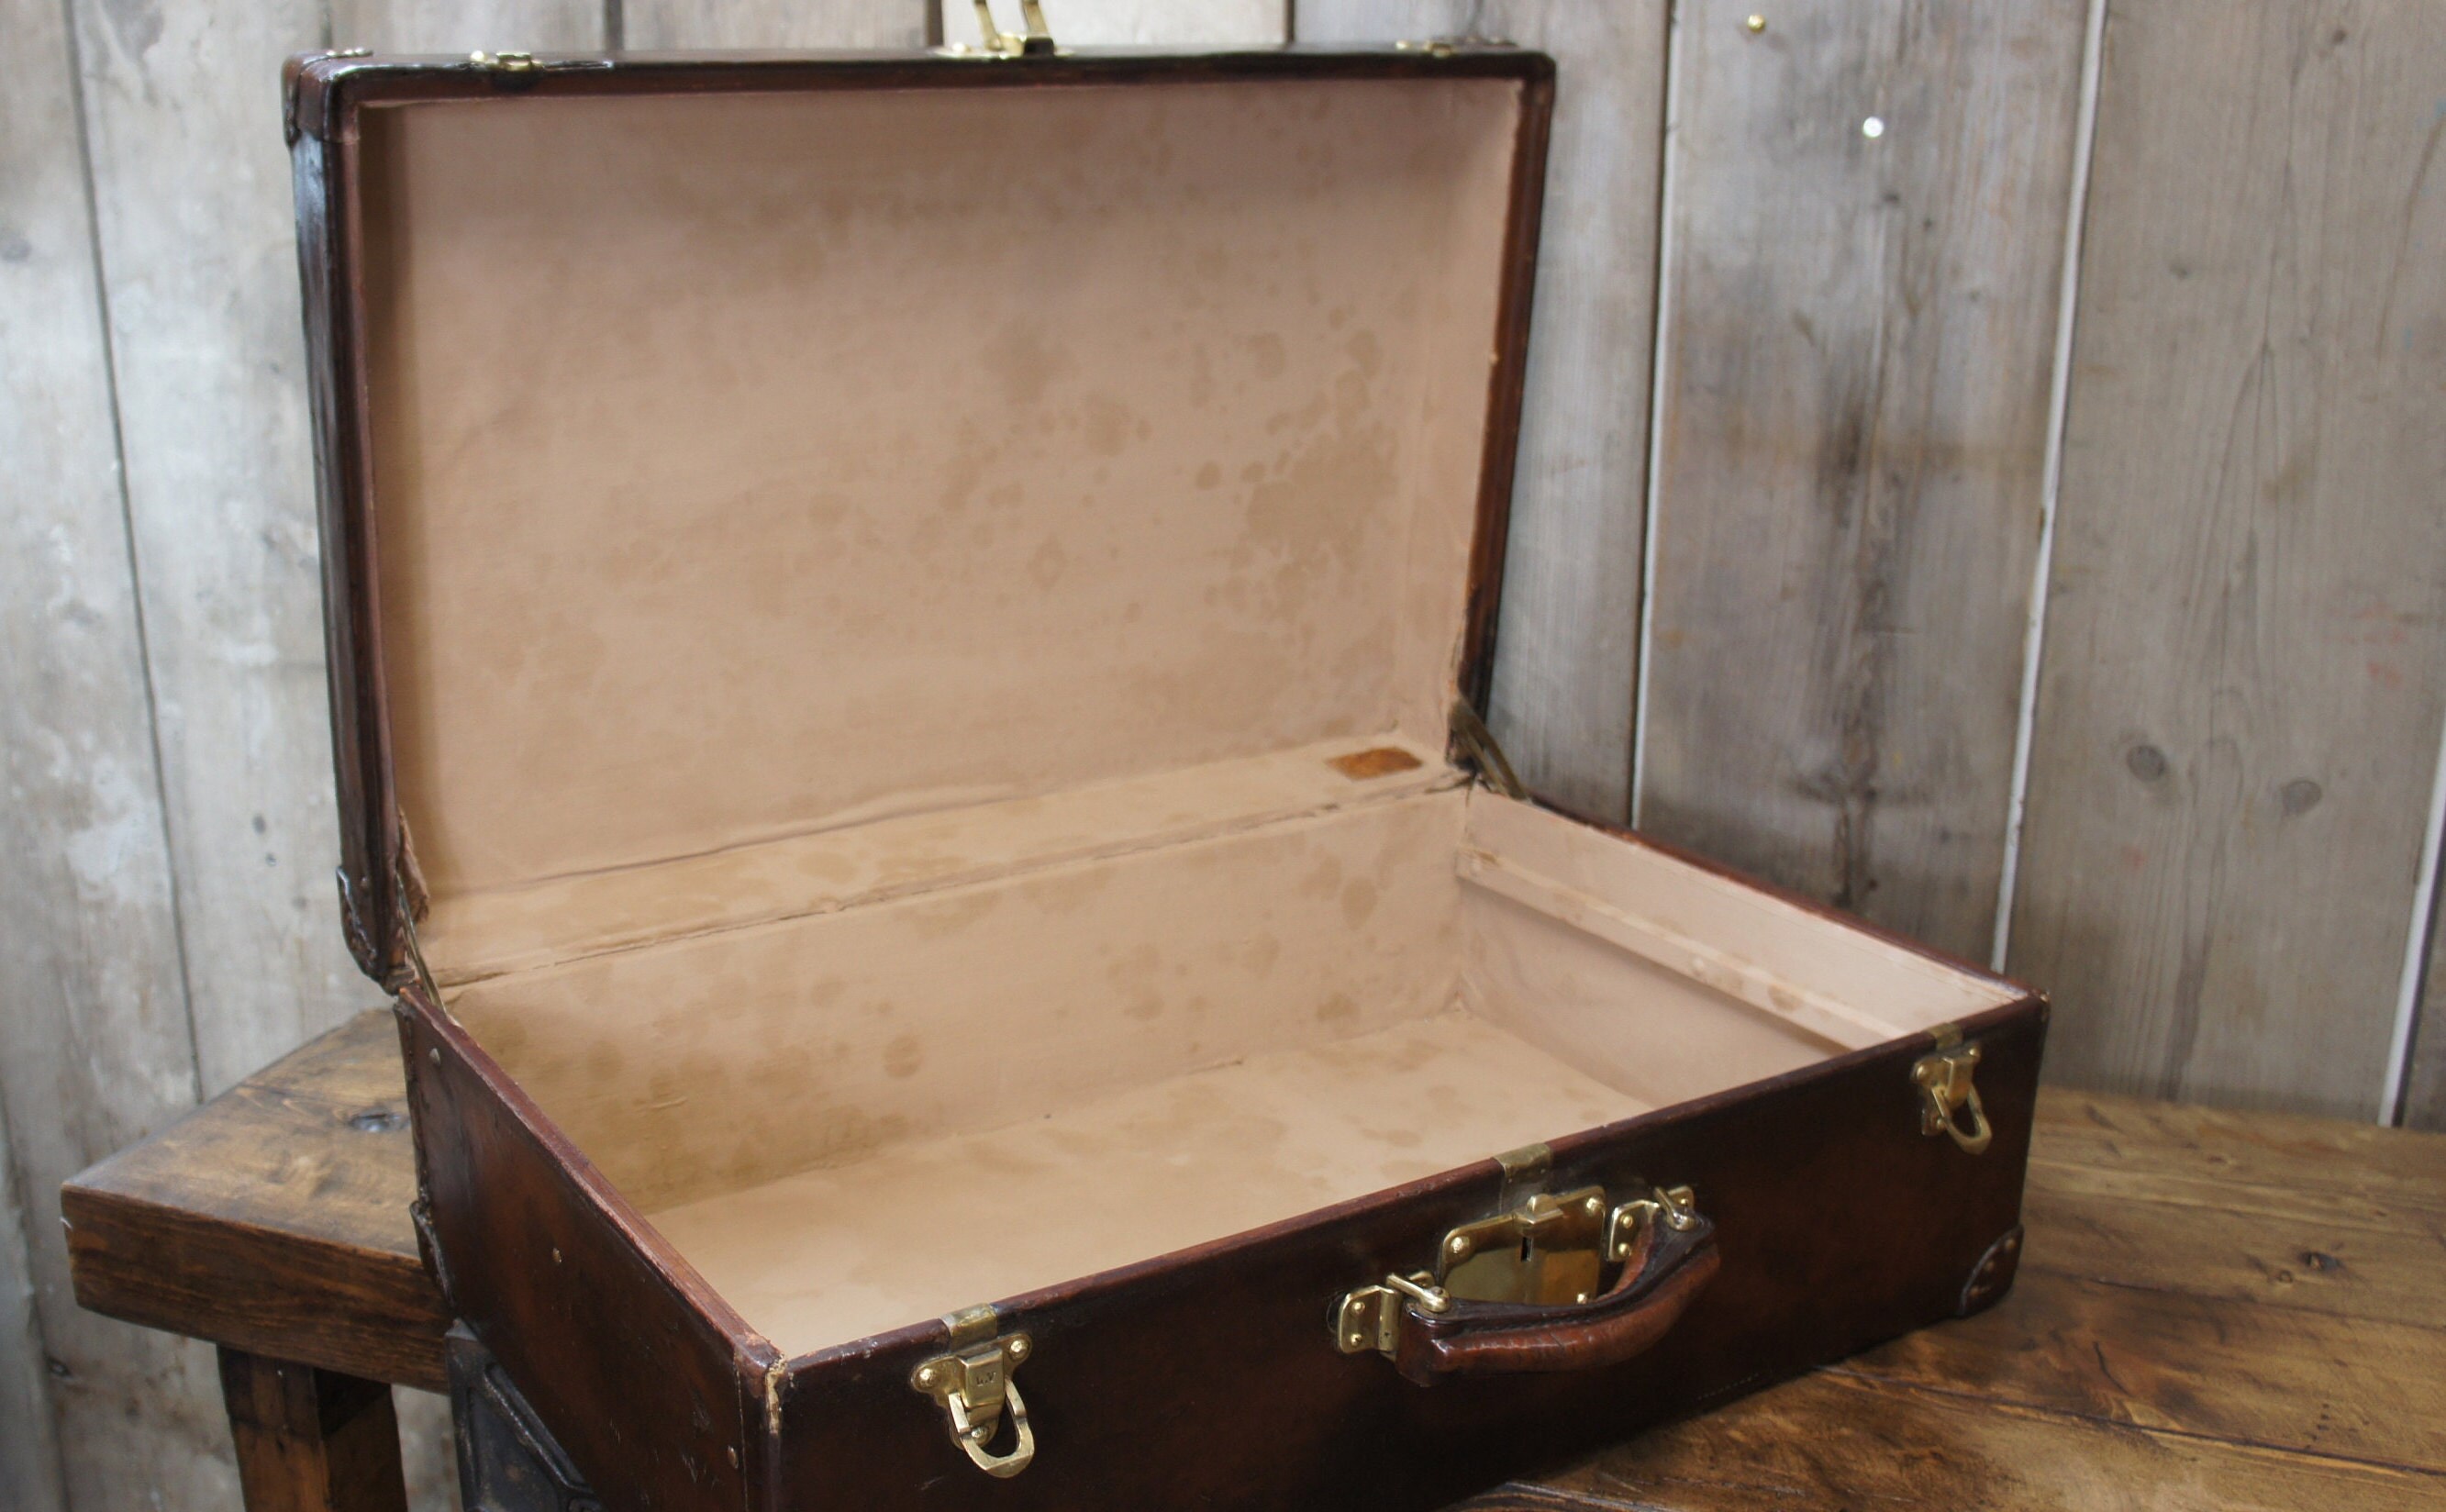 antigua maleta de viaje louis vuitton original - Acheter Autres objets  vintage sur todocoleccion